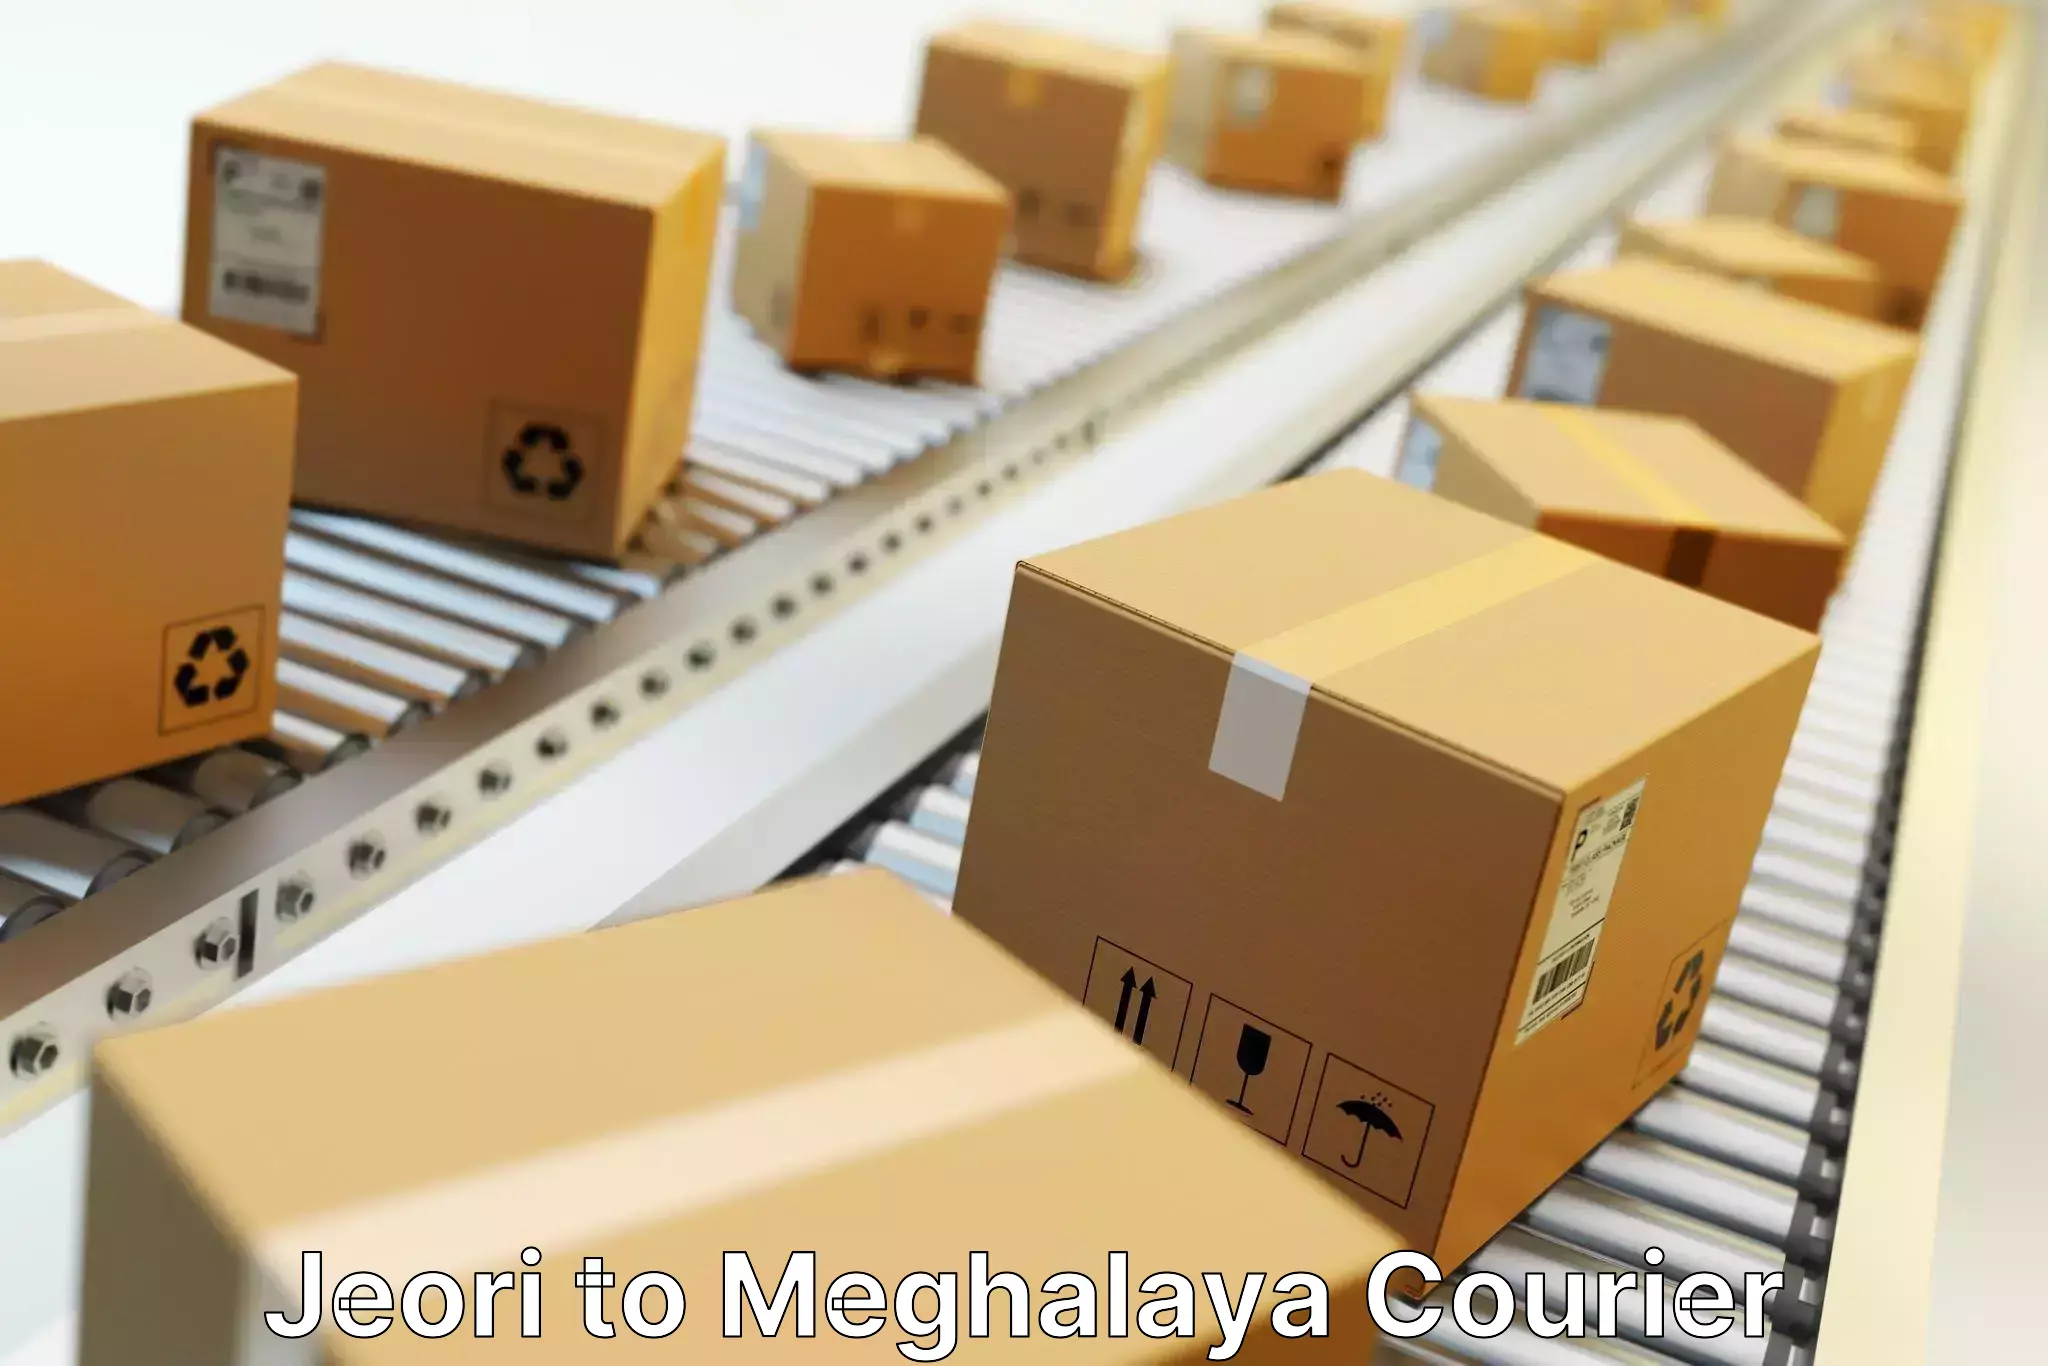 Seamless shipping experience in Jeori to Meghalaya